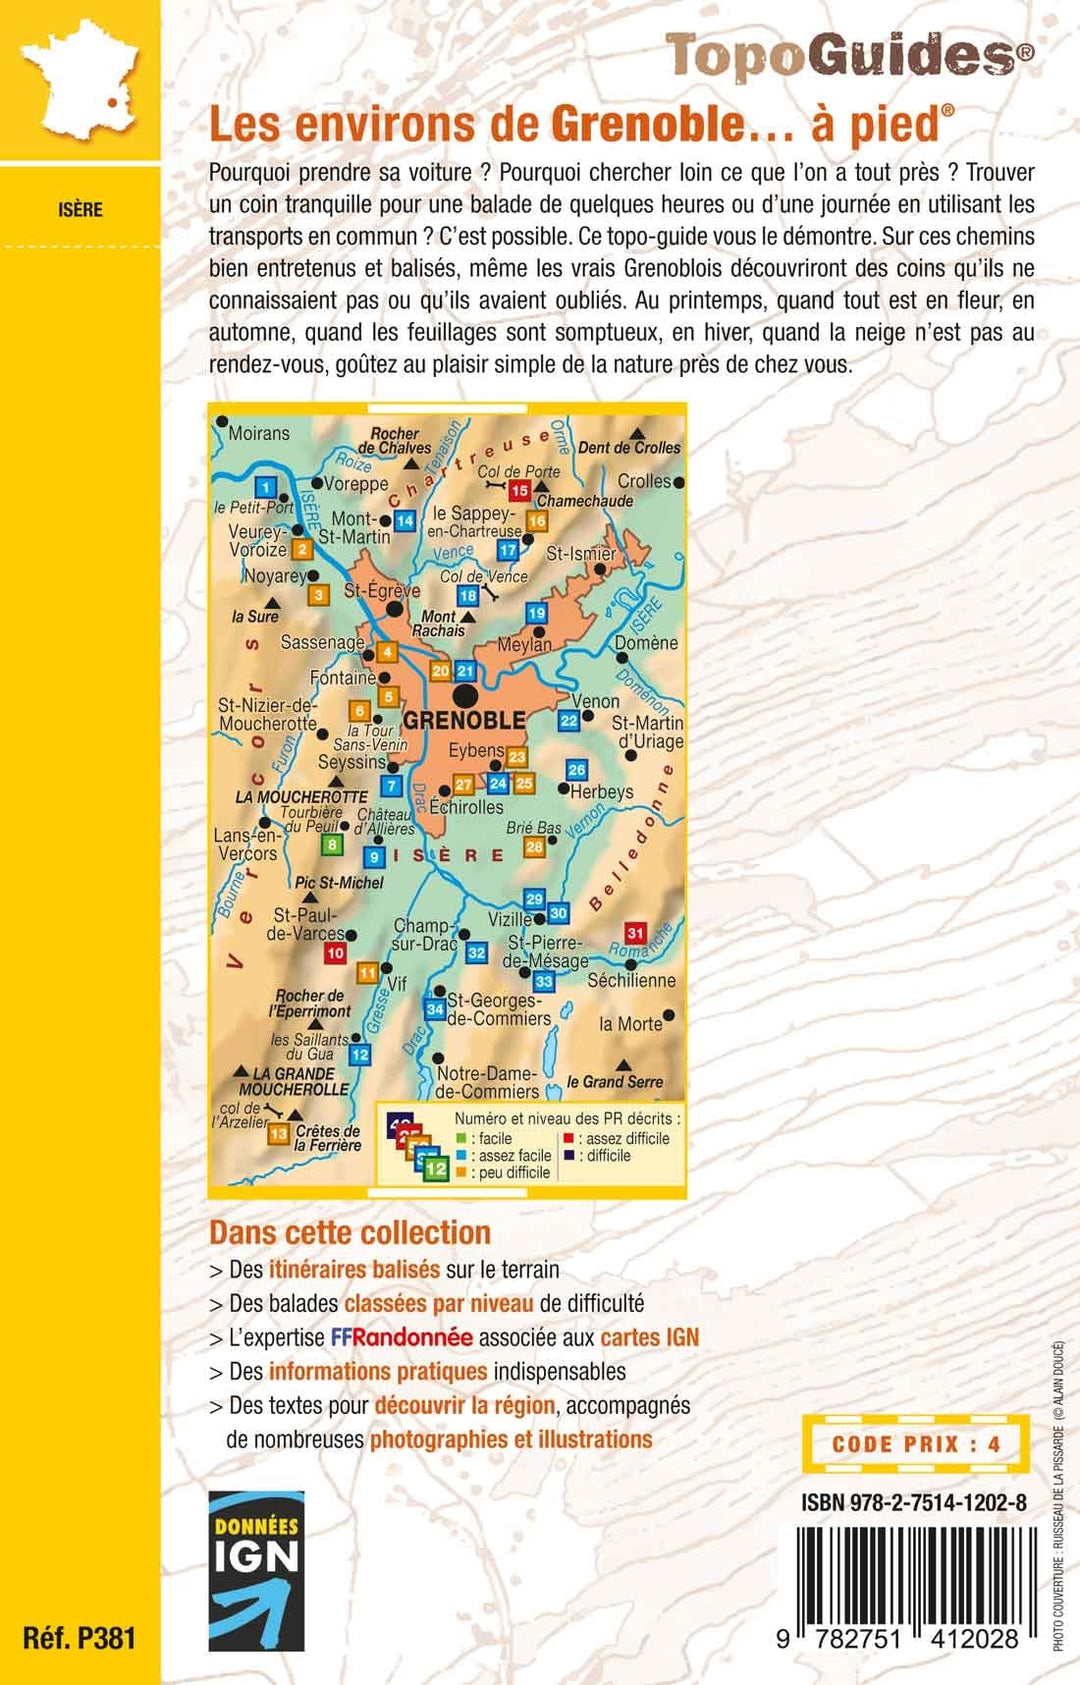 Topoguide de randonnée - Les environs de Grenoble à pied | FFR guide de randonnée FFR - Fédération Française de Randonnée 